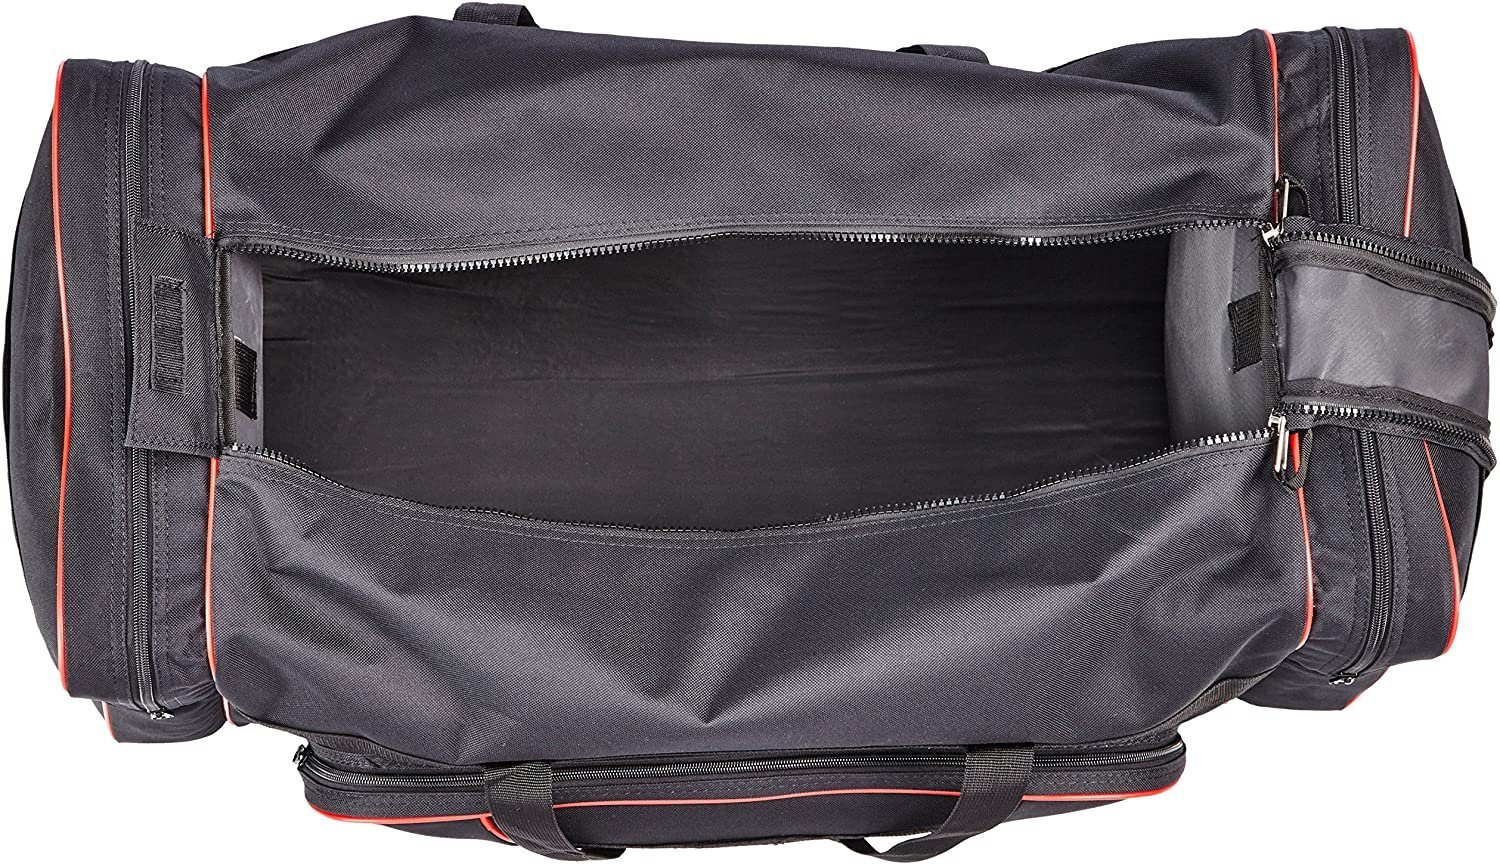 Kinder Kindertaschen & -koffer KWON Sporttasche Club Line X-Large Tasche Trainingstasche 80 x 35 x 35 cm (Top Saler), XXL - 80 c